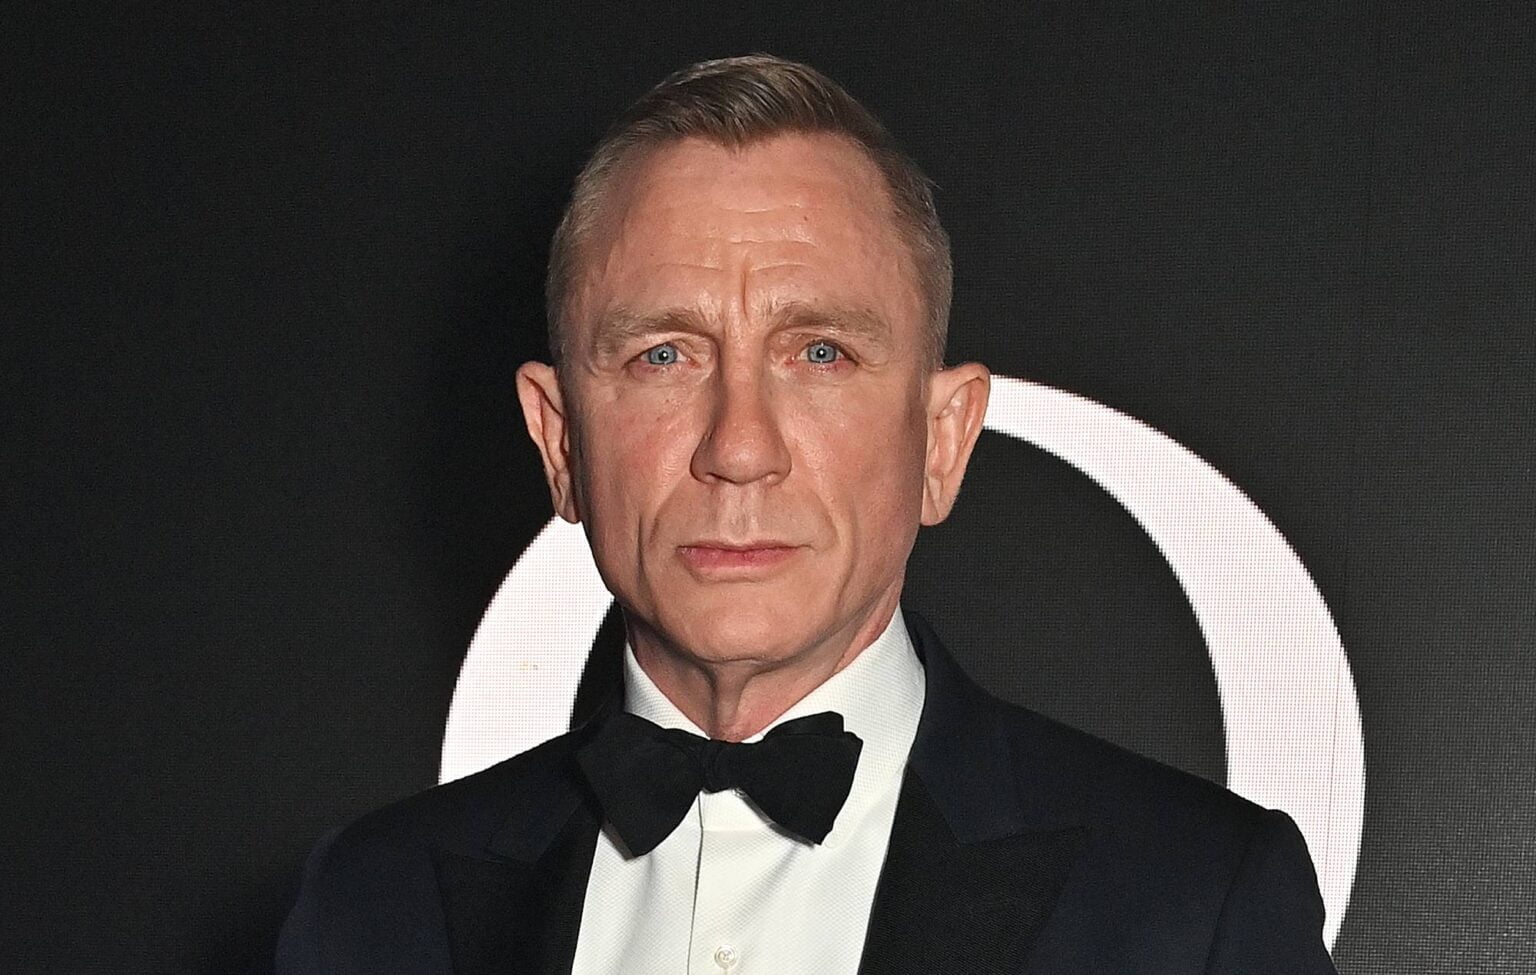 Os produtores de James Bond “nem começaram” a trabalhar na era pós-Daniel Craig